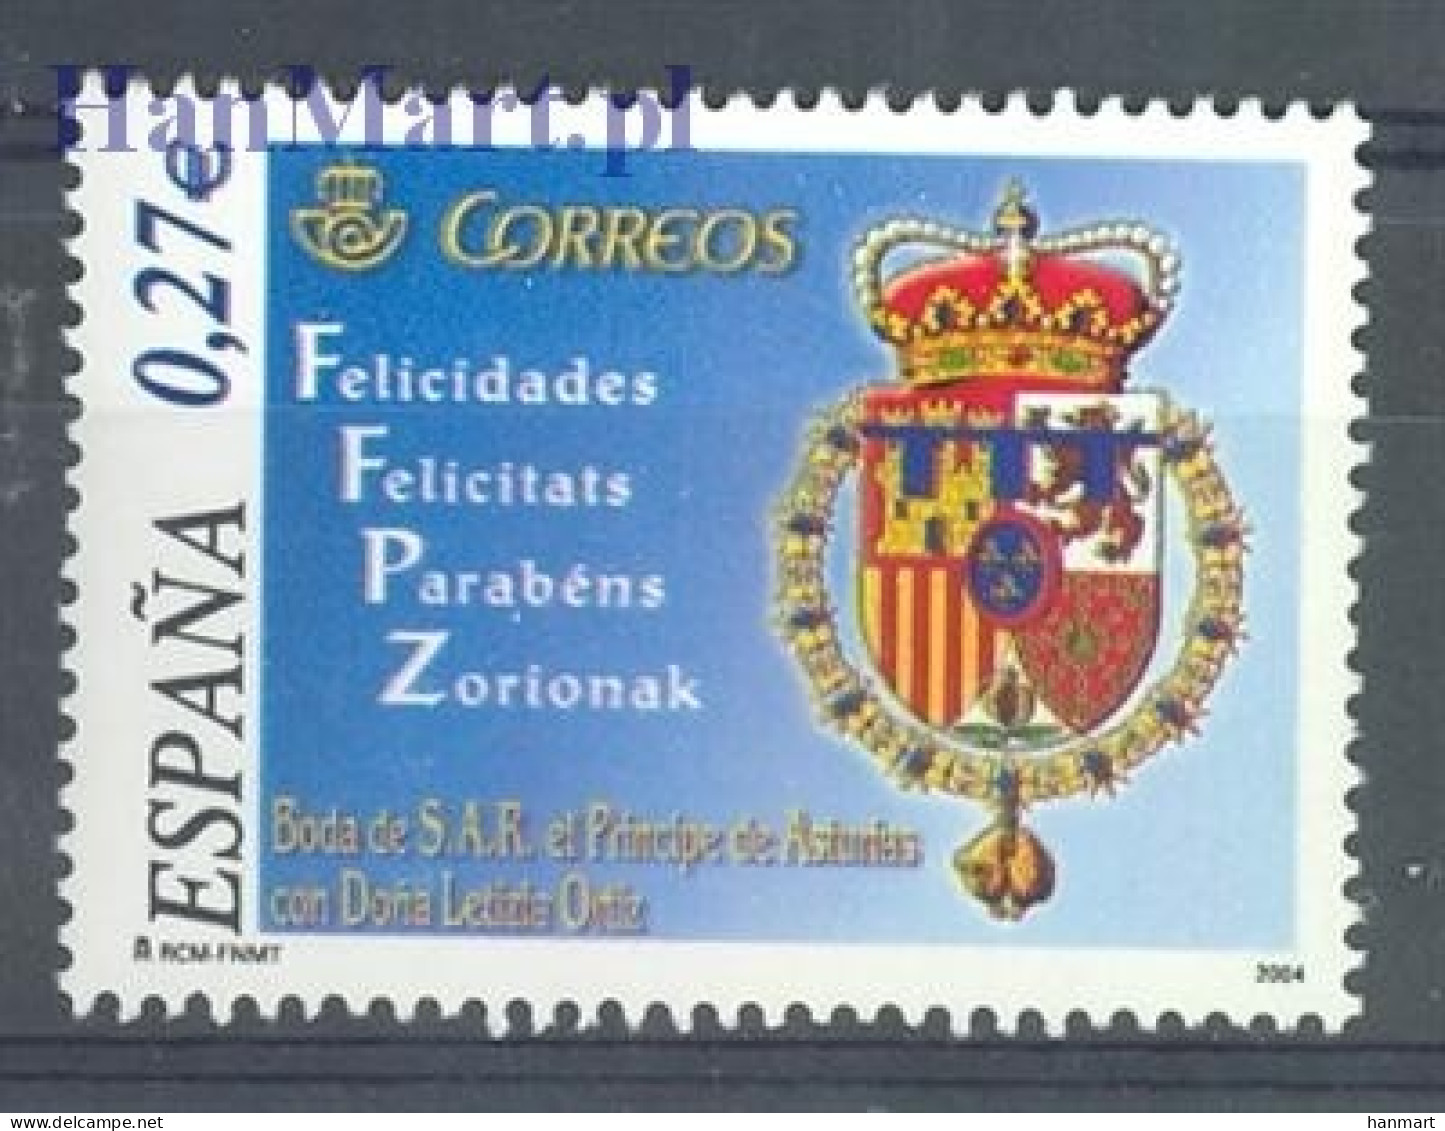 Spain 2004 Mi 3955 MNH  (ZE1 SPN3955) - Briefmarken